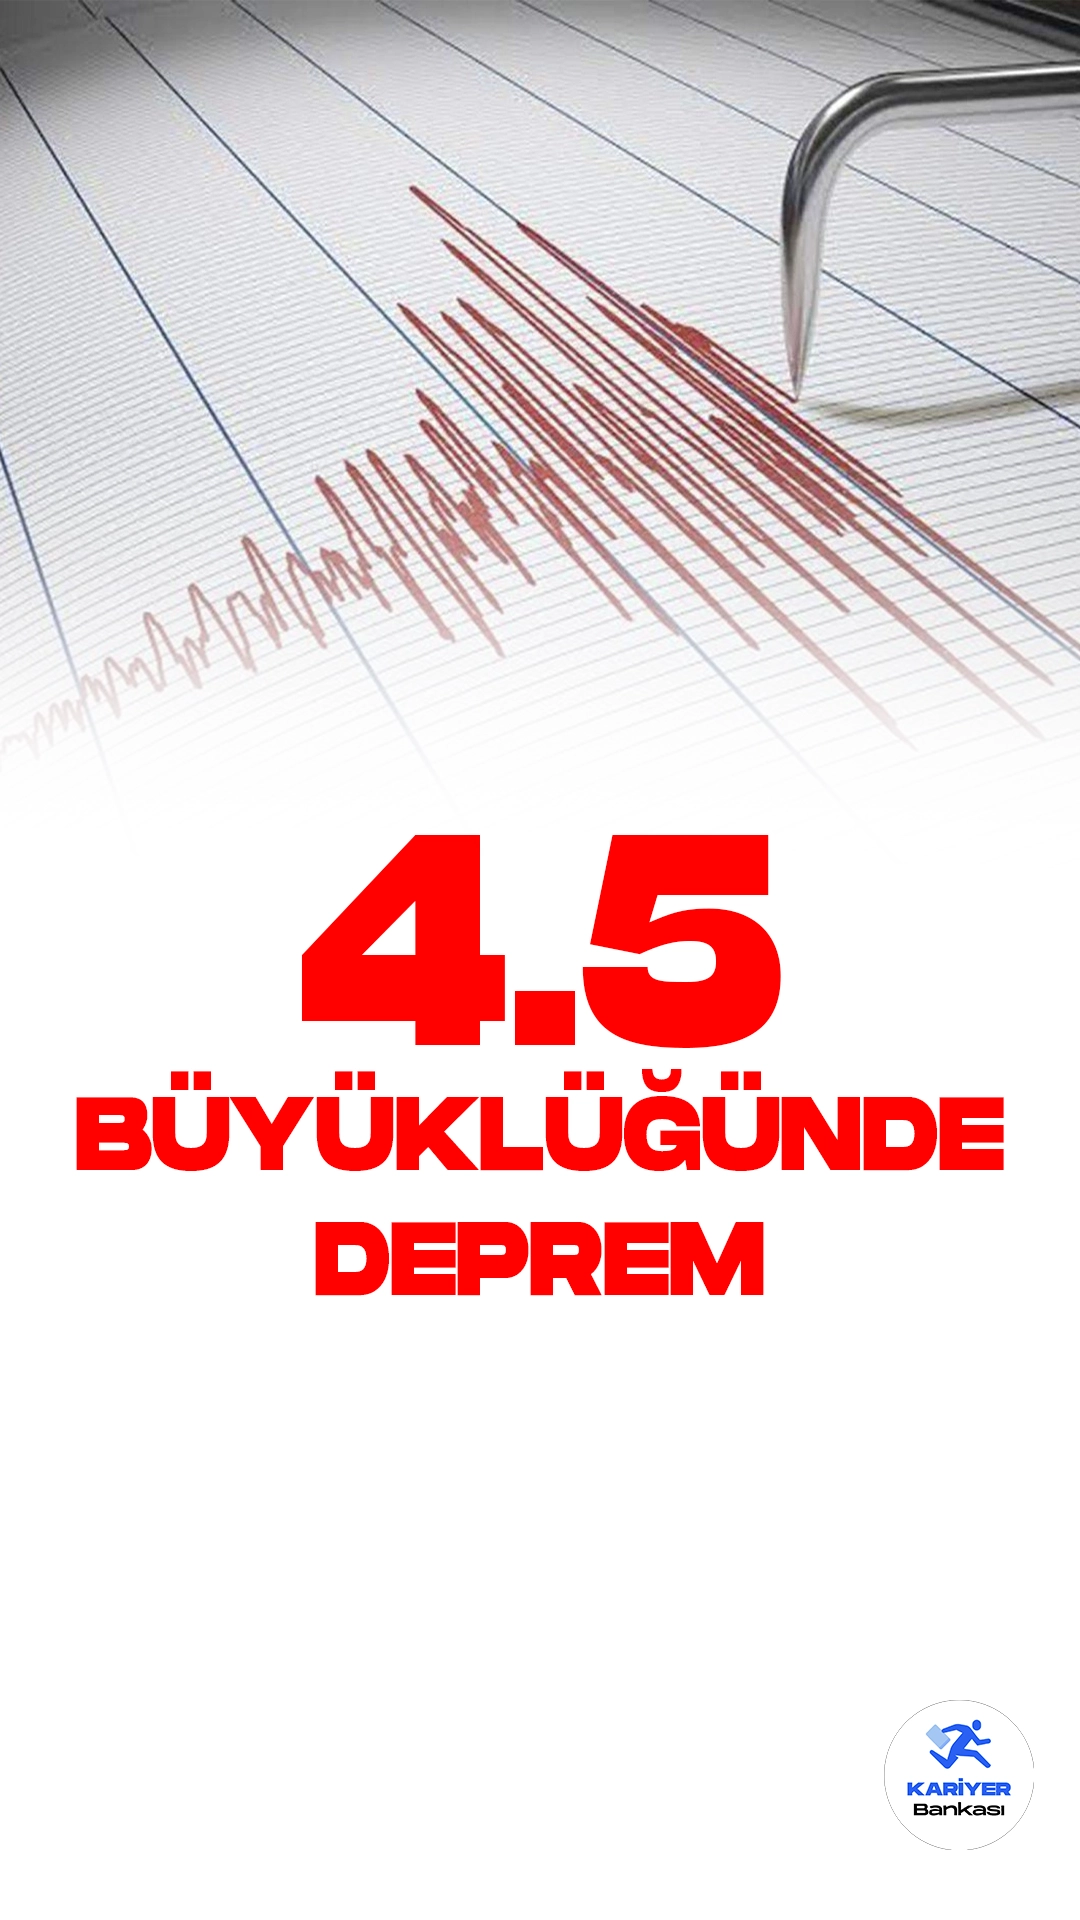 Adana'da 4.5 Büyüklüğünde Deprem Oldu. İçişleri Bakanlığı Afet ve Acil Durum Yönetimi Başkanlığı resmi sayfasından yayımlanan son dakika duyurusuna göre, Adana'nın Aladağ ilçesinde 4.5 büyüklüğünde deprem meydana geldiği aktarıldı.